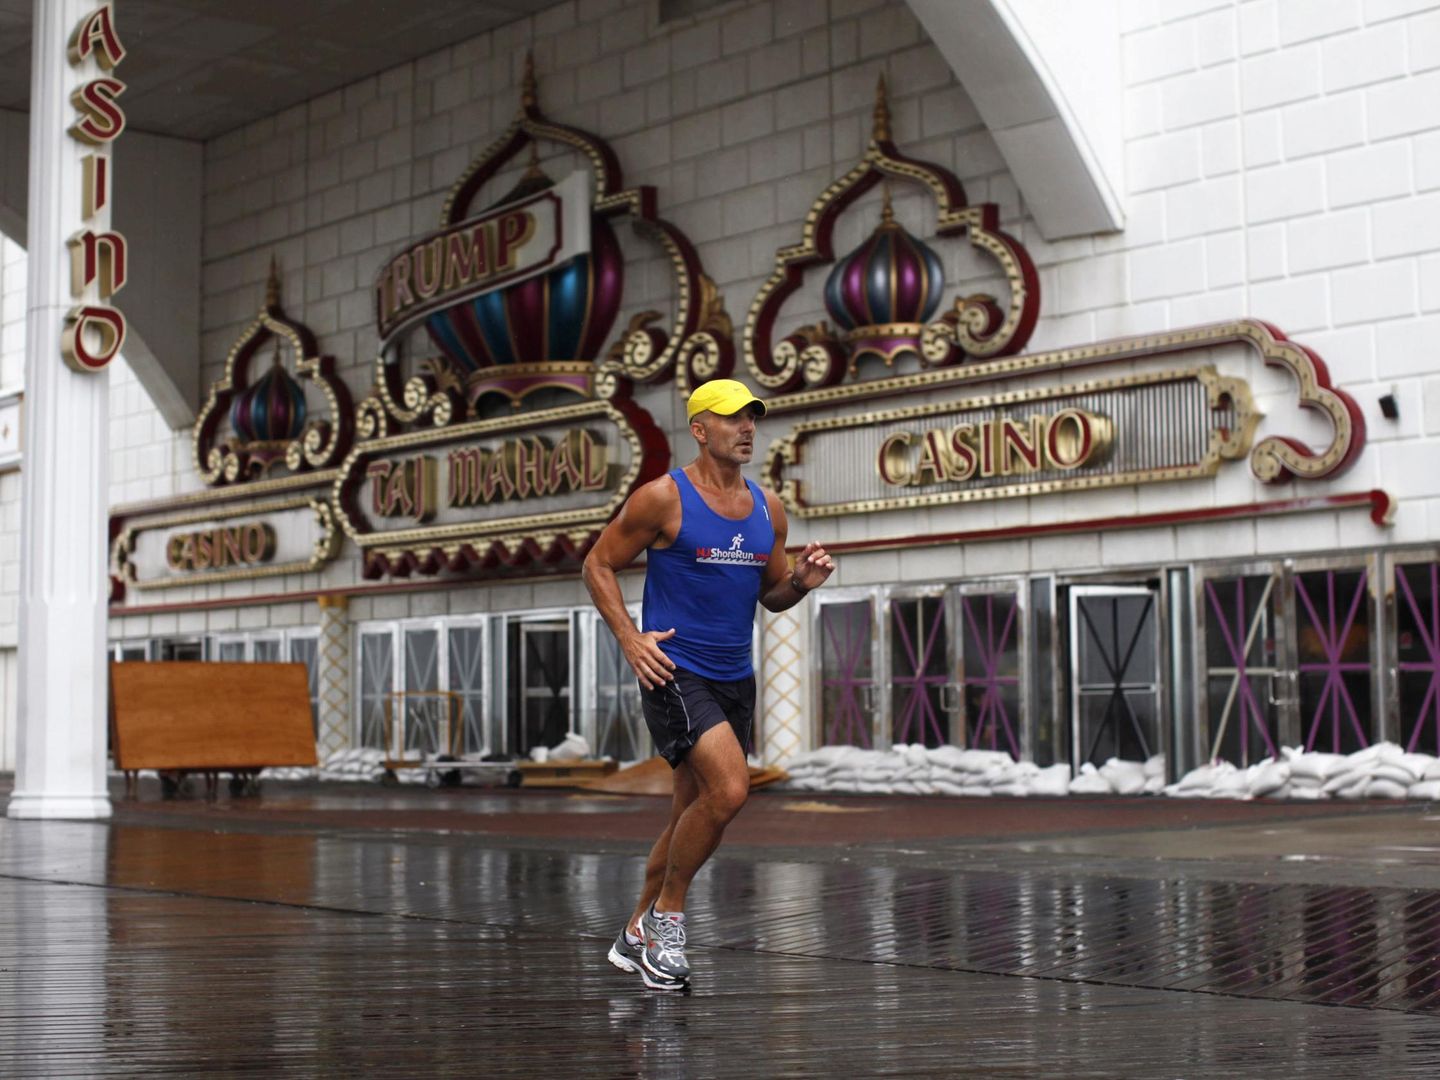 Un corredor pasa delante del Taj Mahal, cerrado durante el día, en agosto de 2011. (Reuters)